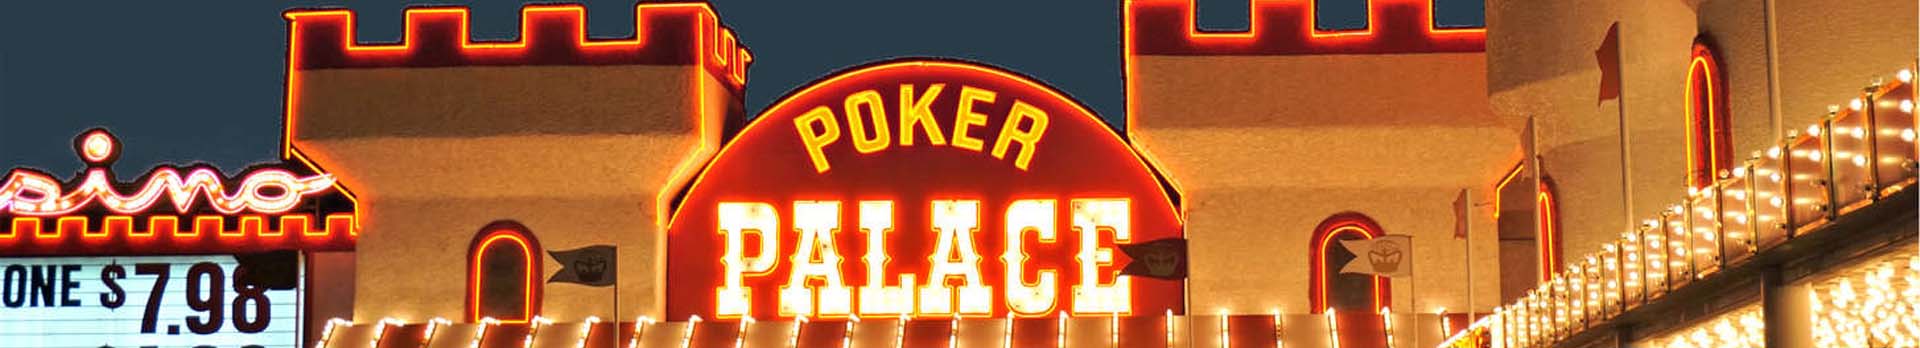 Poker Palace